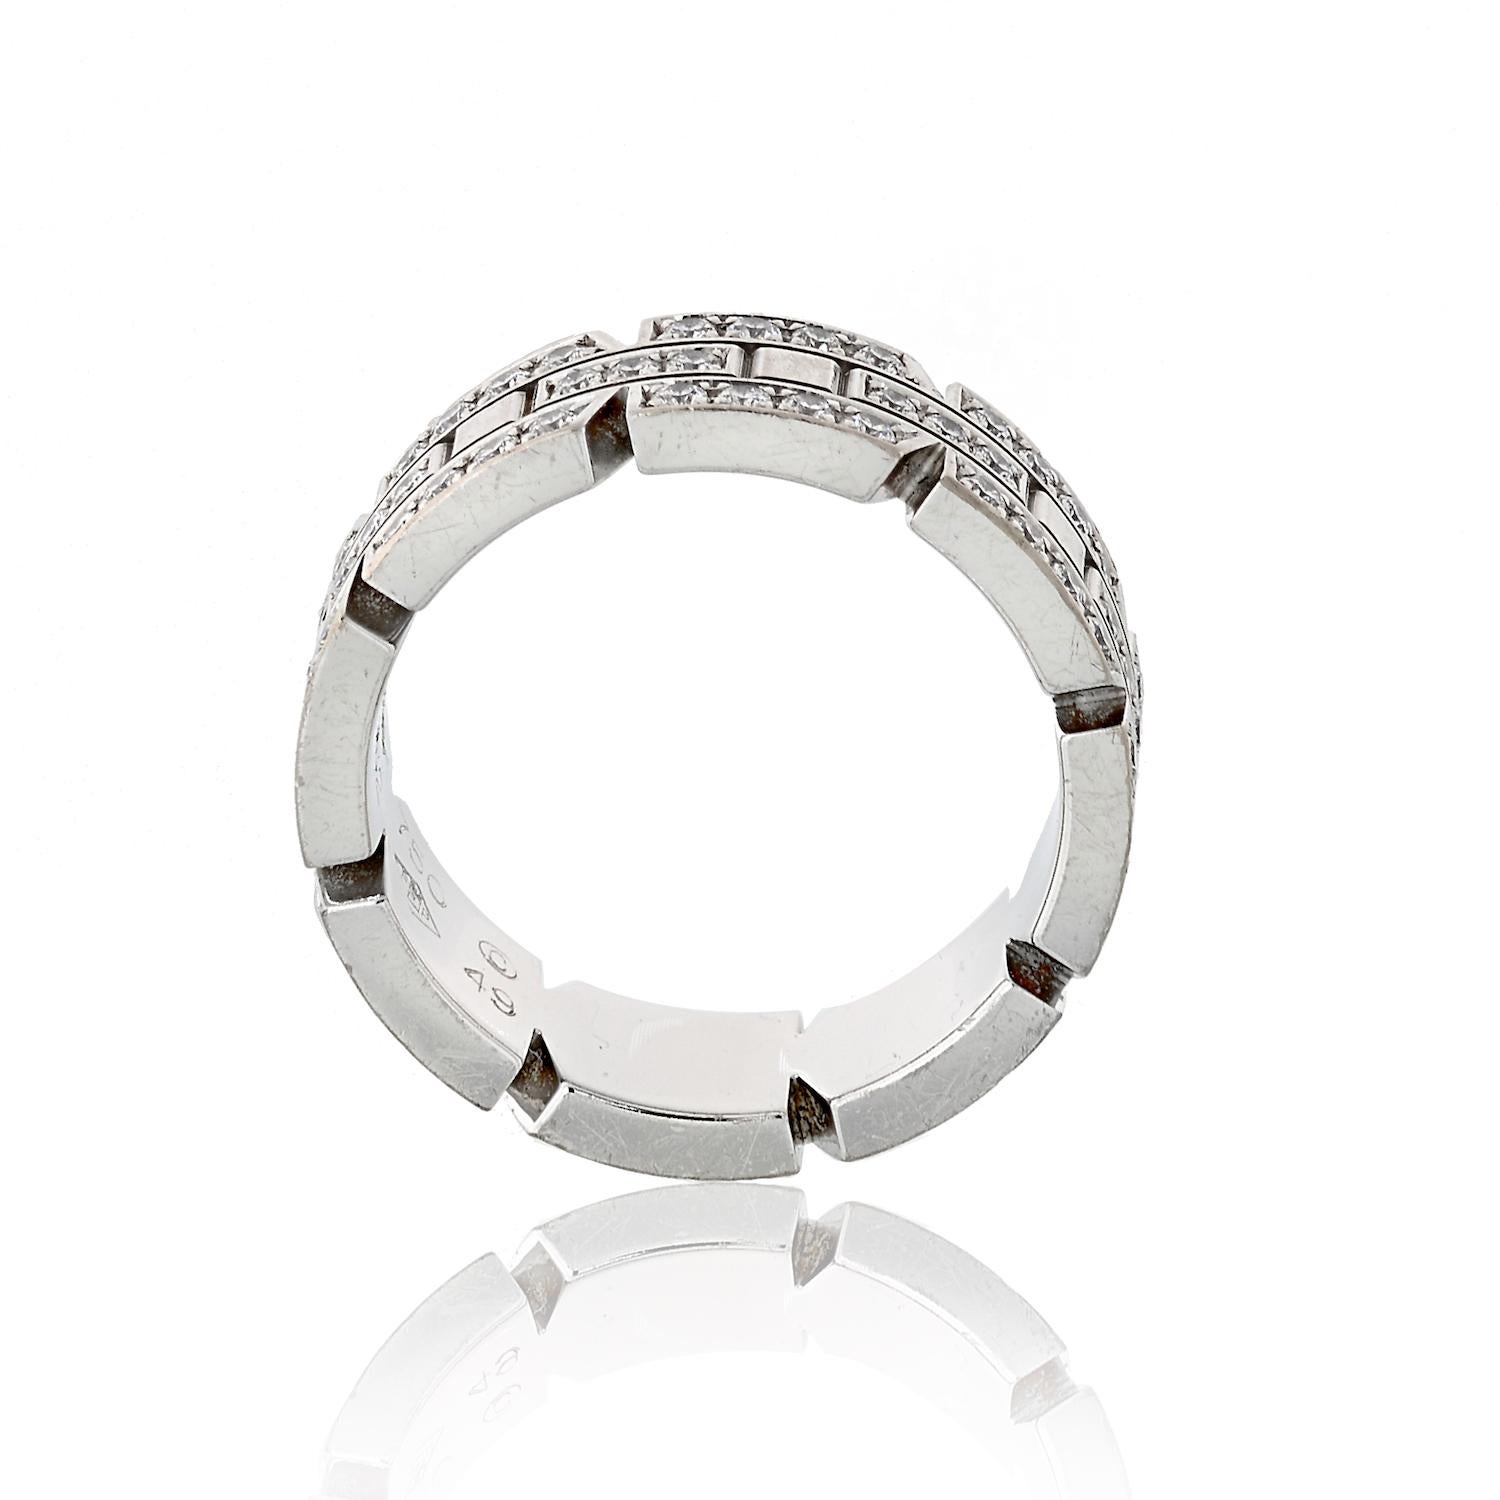 Women's or Men's Cartier Tank Francaise Diamond Ring in White Gold